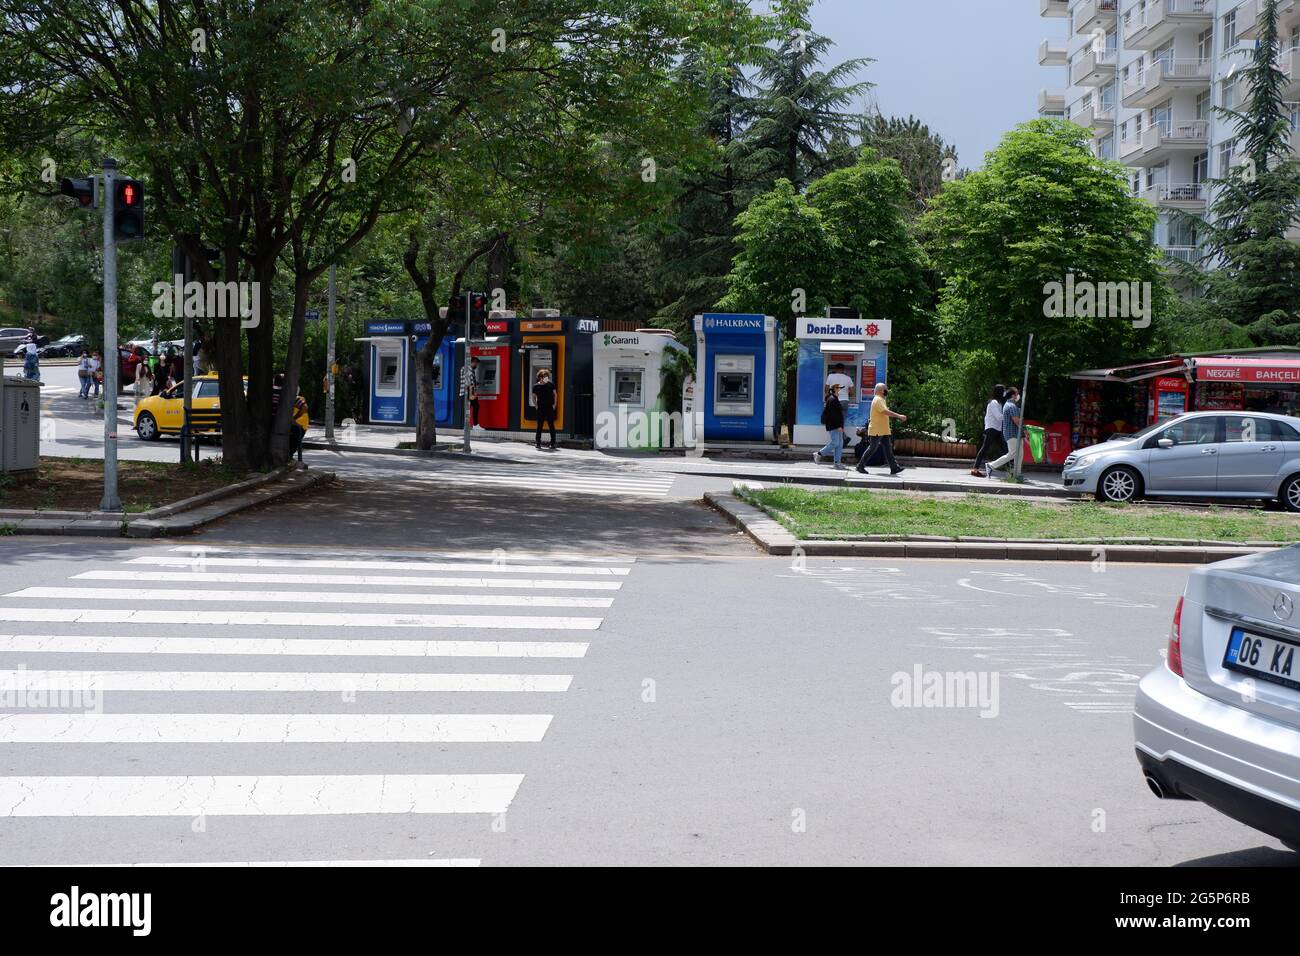 Les guichets automatiques de nombreuses banques turques se trouvant sur le bord de la route à un jour régulier Ankara Cankaya Banque D'Images